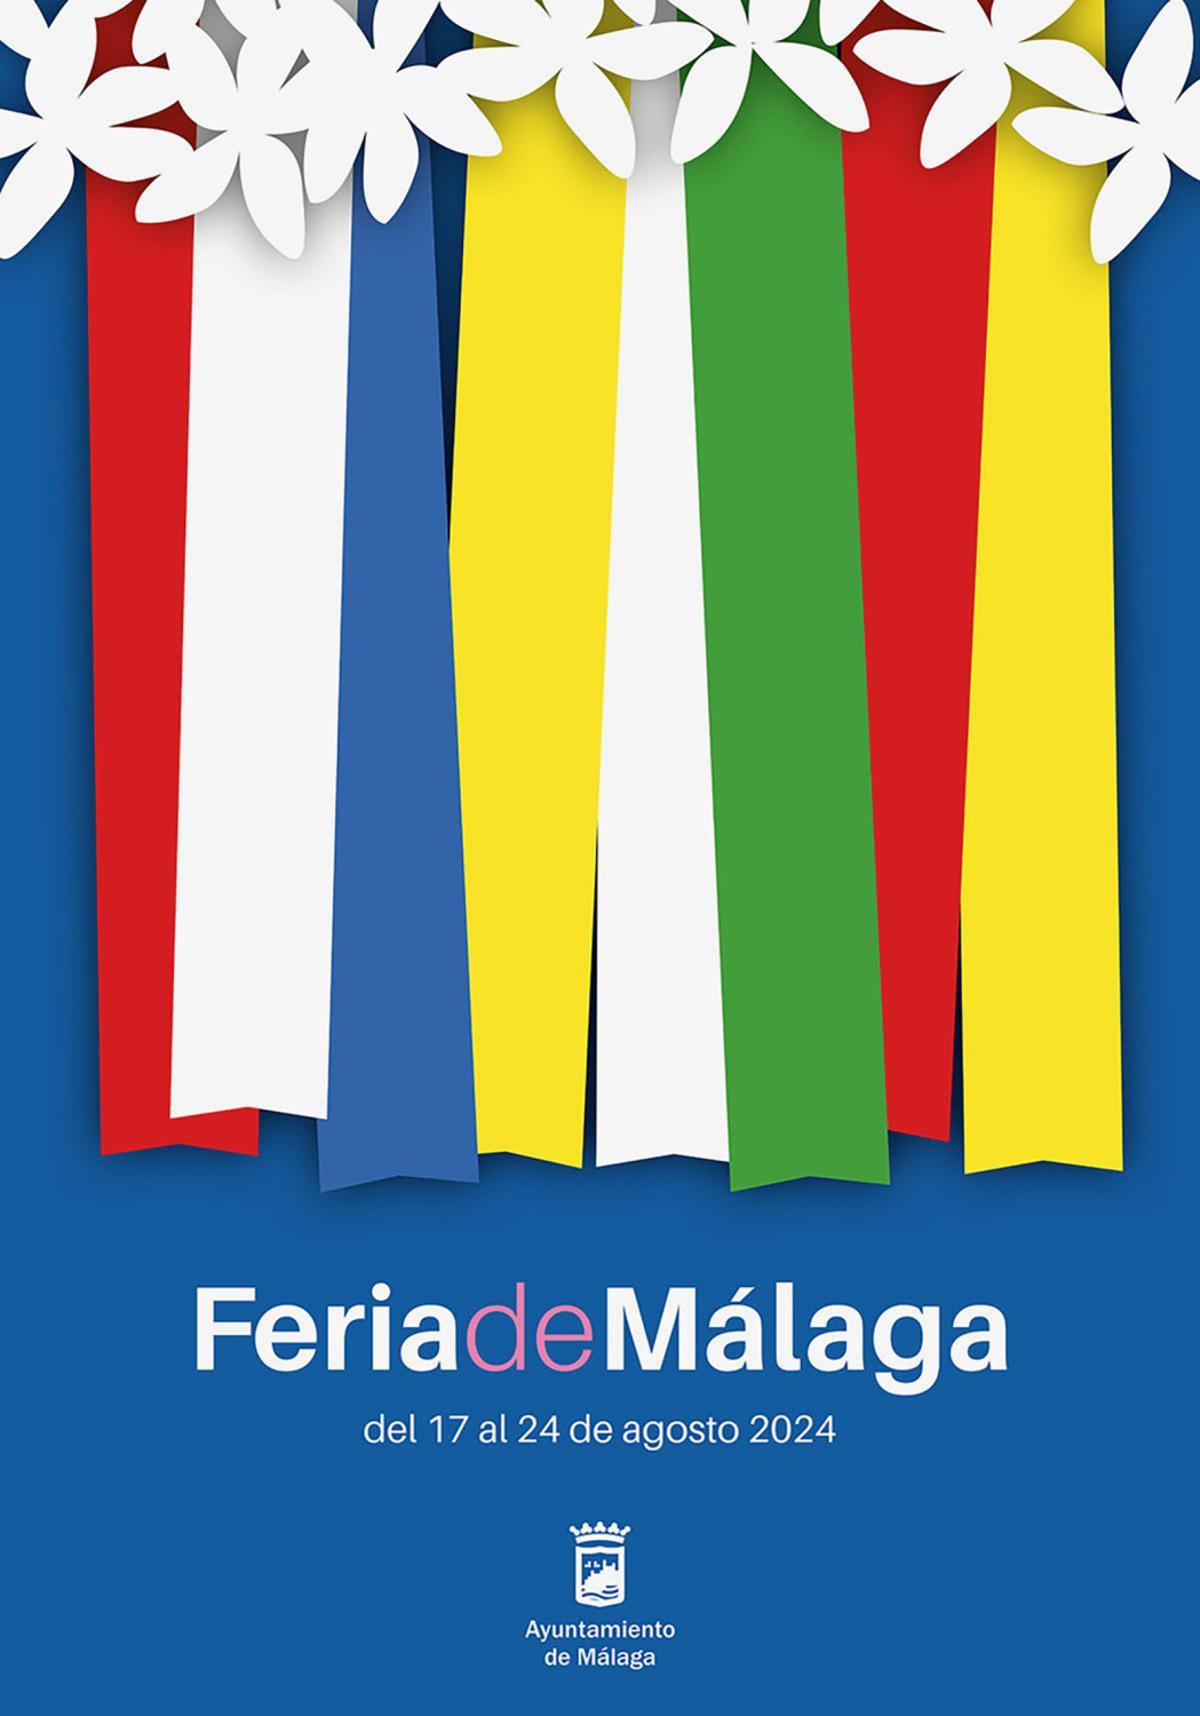 Atuendos, cartel finalista para la Feria de Málaga 2024